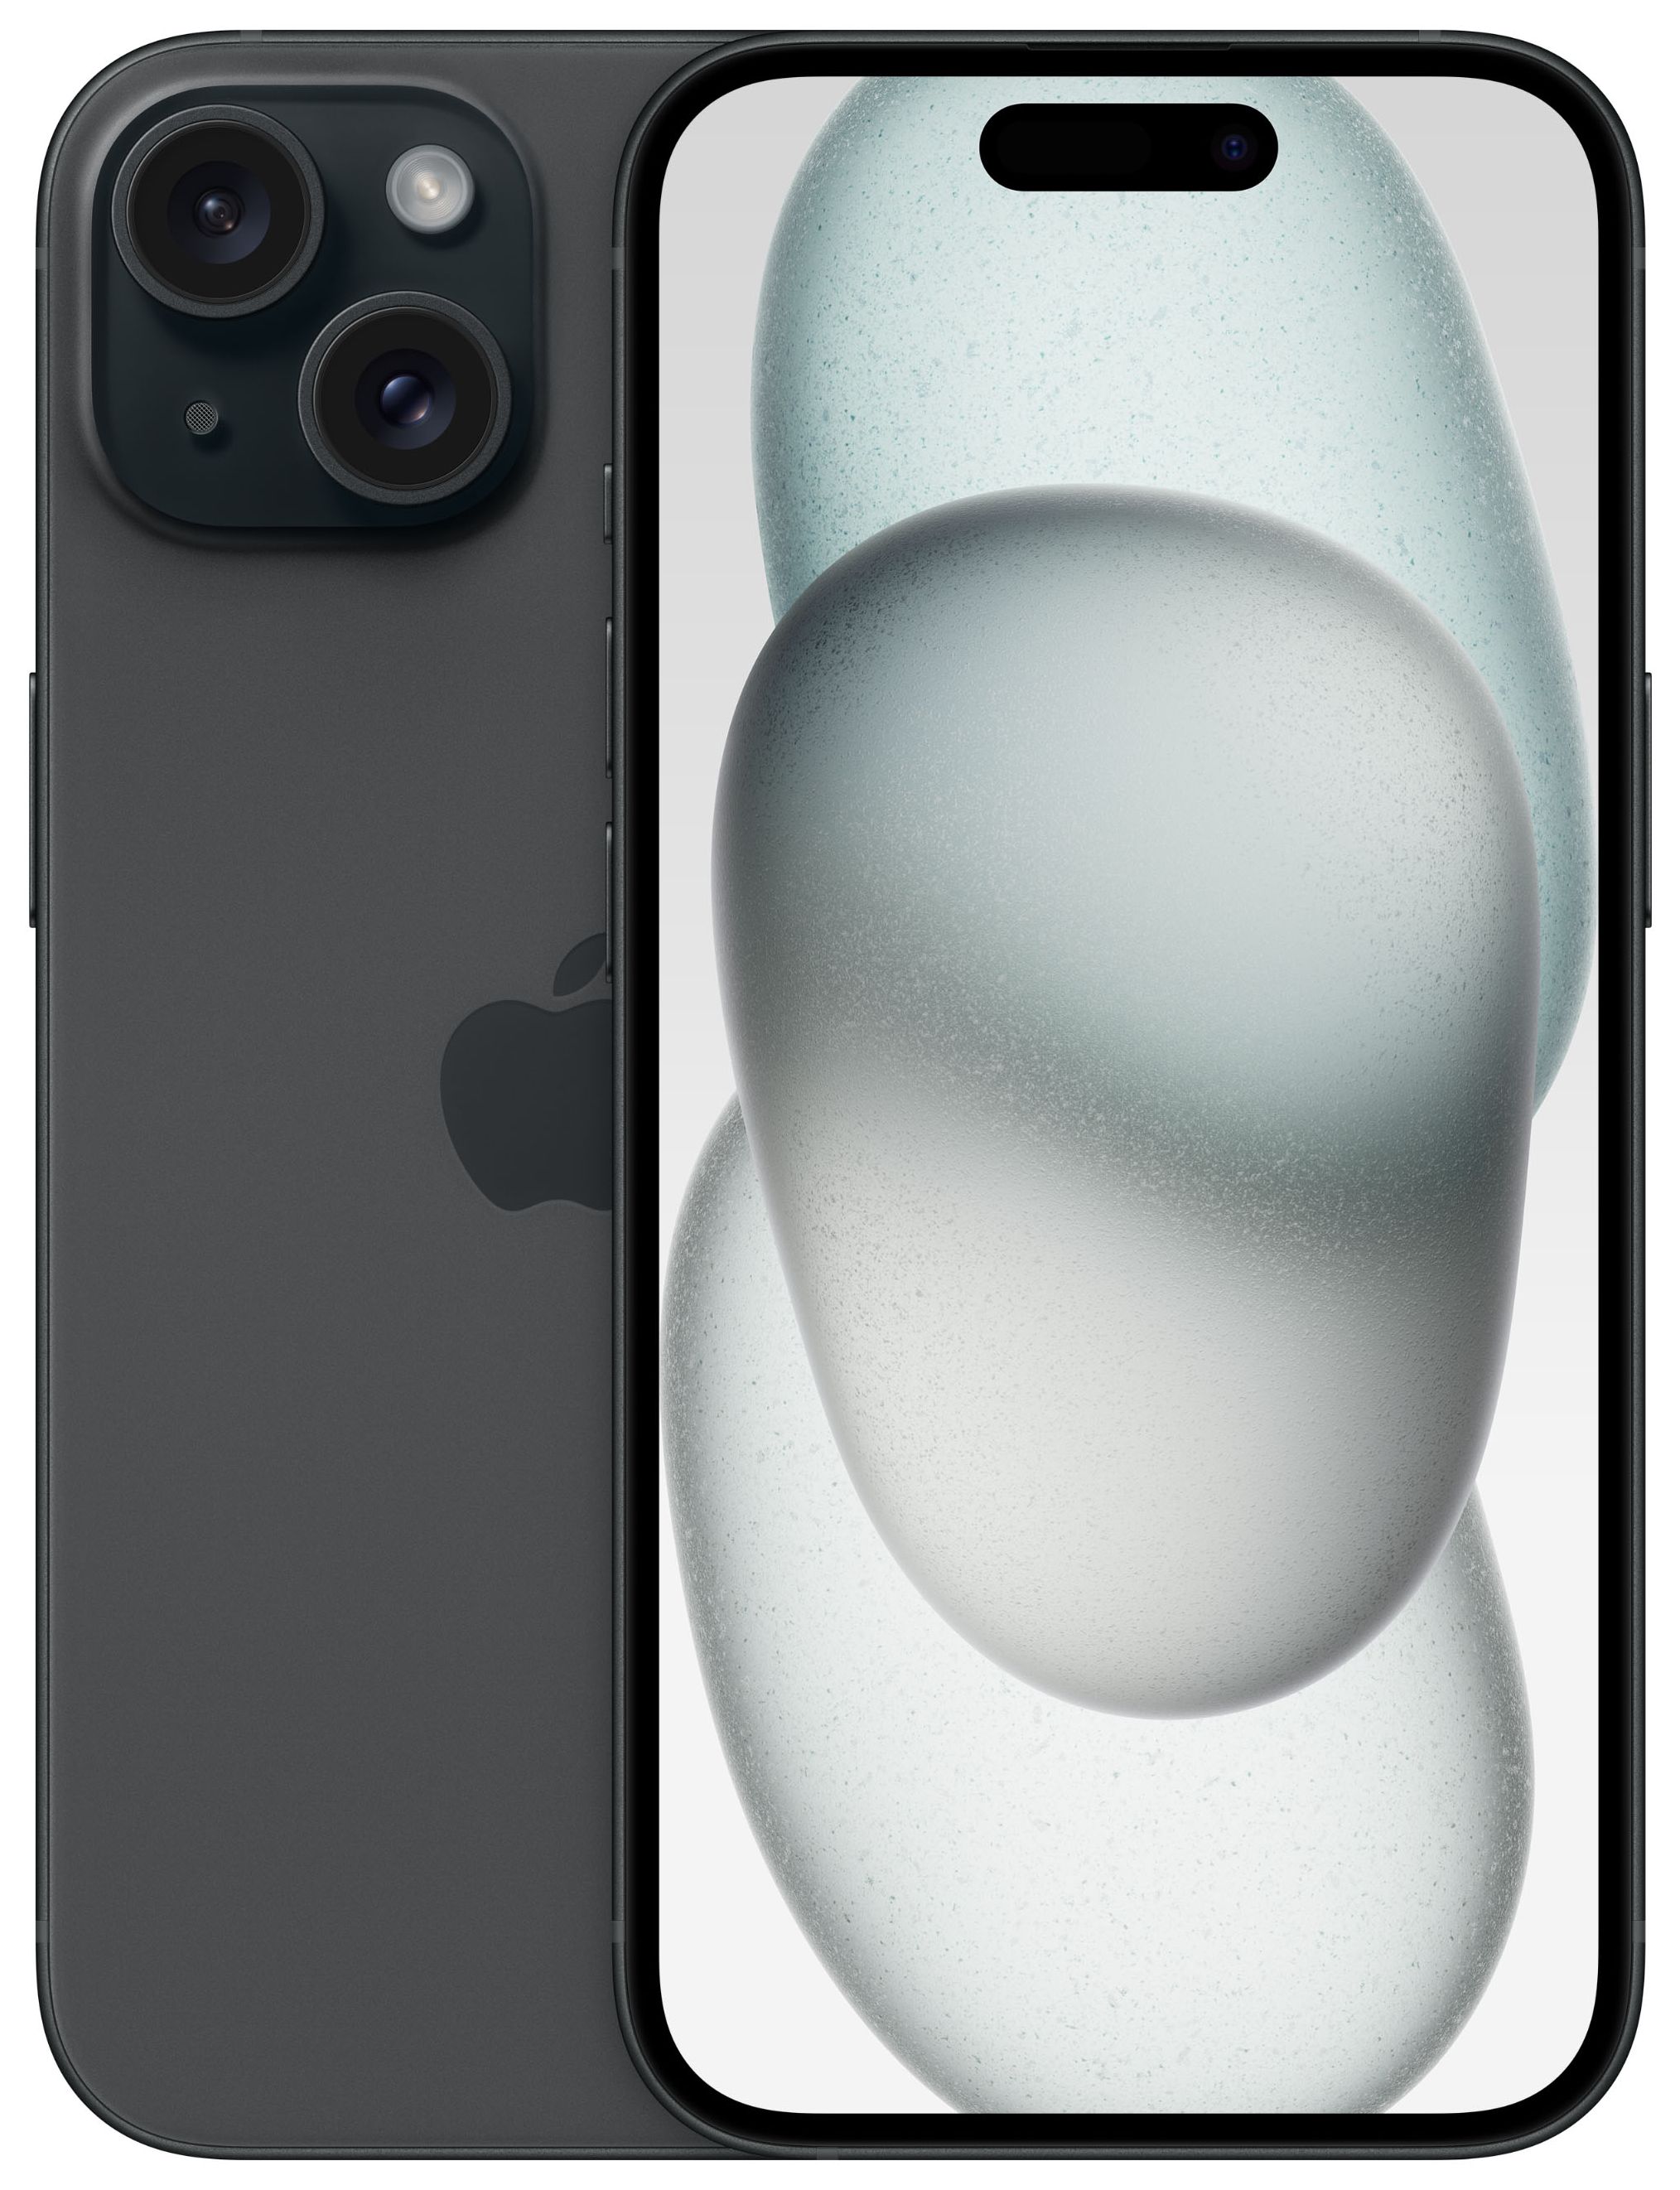 Sim expert 15,5 Apple iPhone 48 IOS Dual Zoll) GB (Schwarz) Kamera 5G Dual 512 MP von Technomarkt (6.1 cm 15 Smartphone